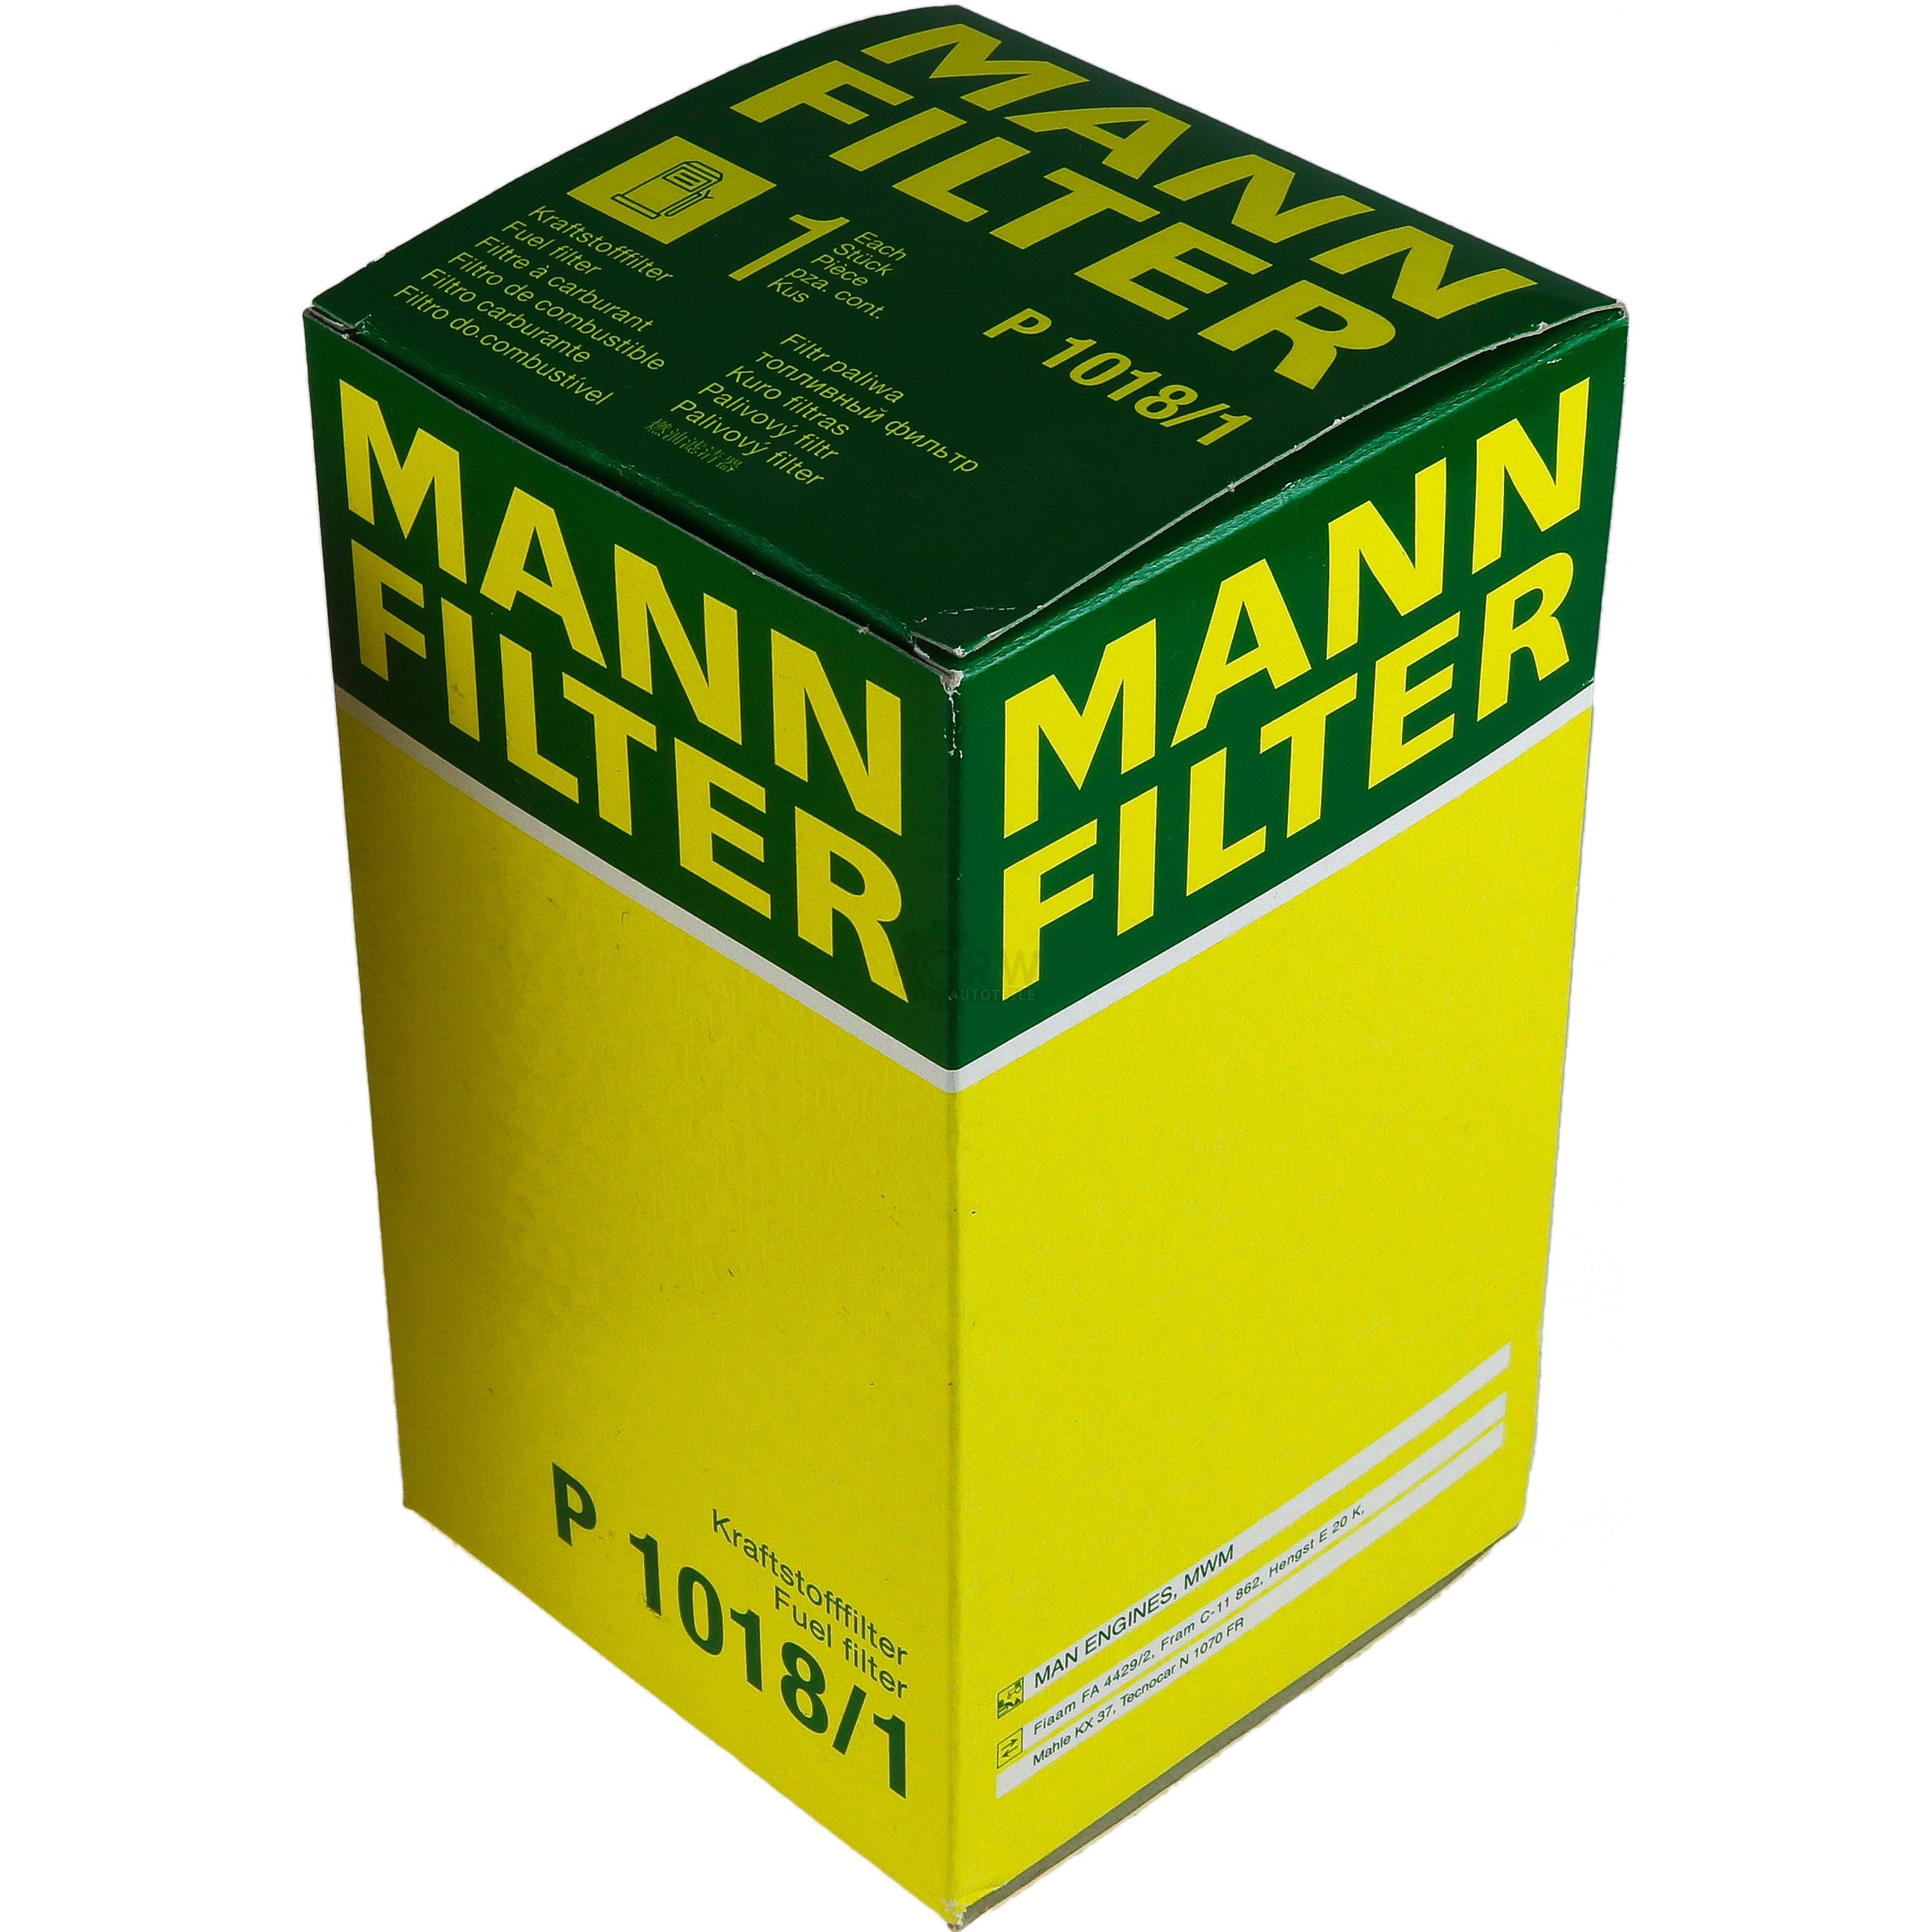 MANN-FILTER Kraftstofffilter P 1018/1 Fuel Filter